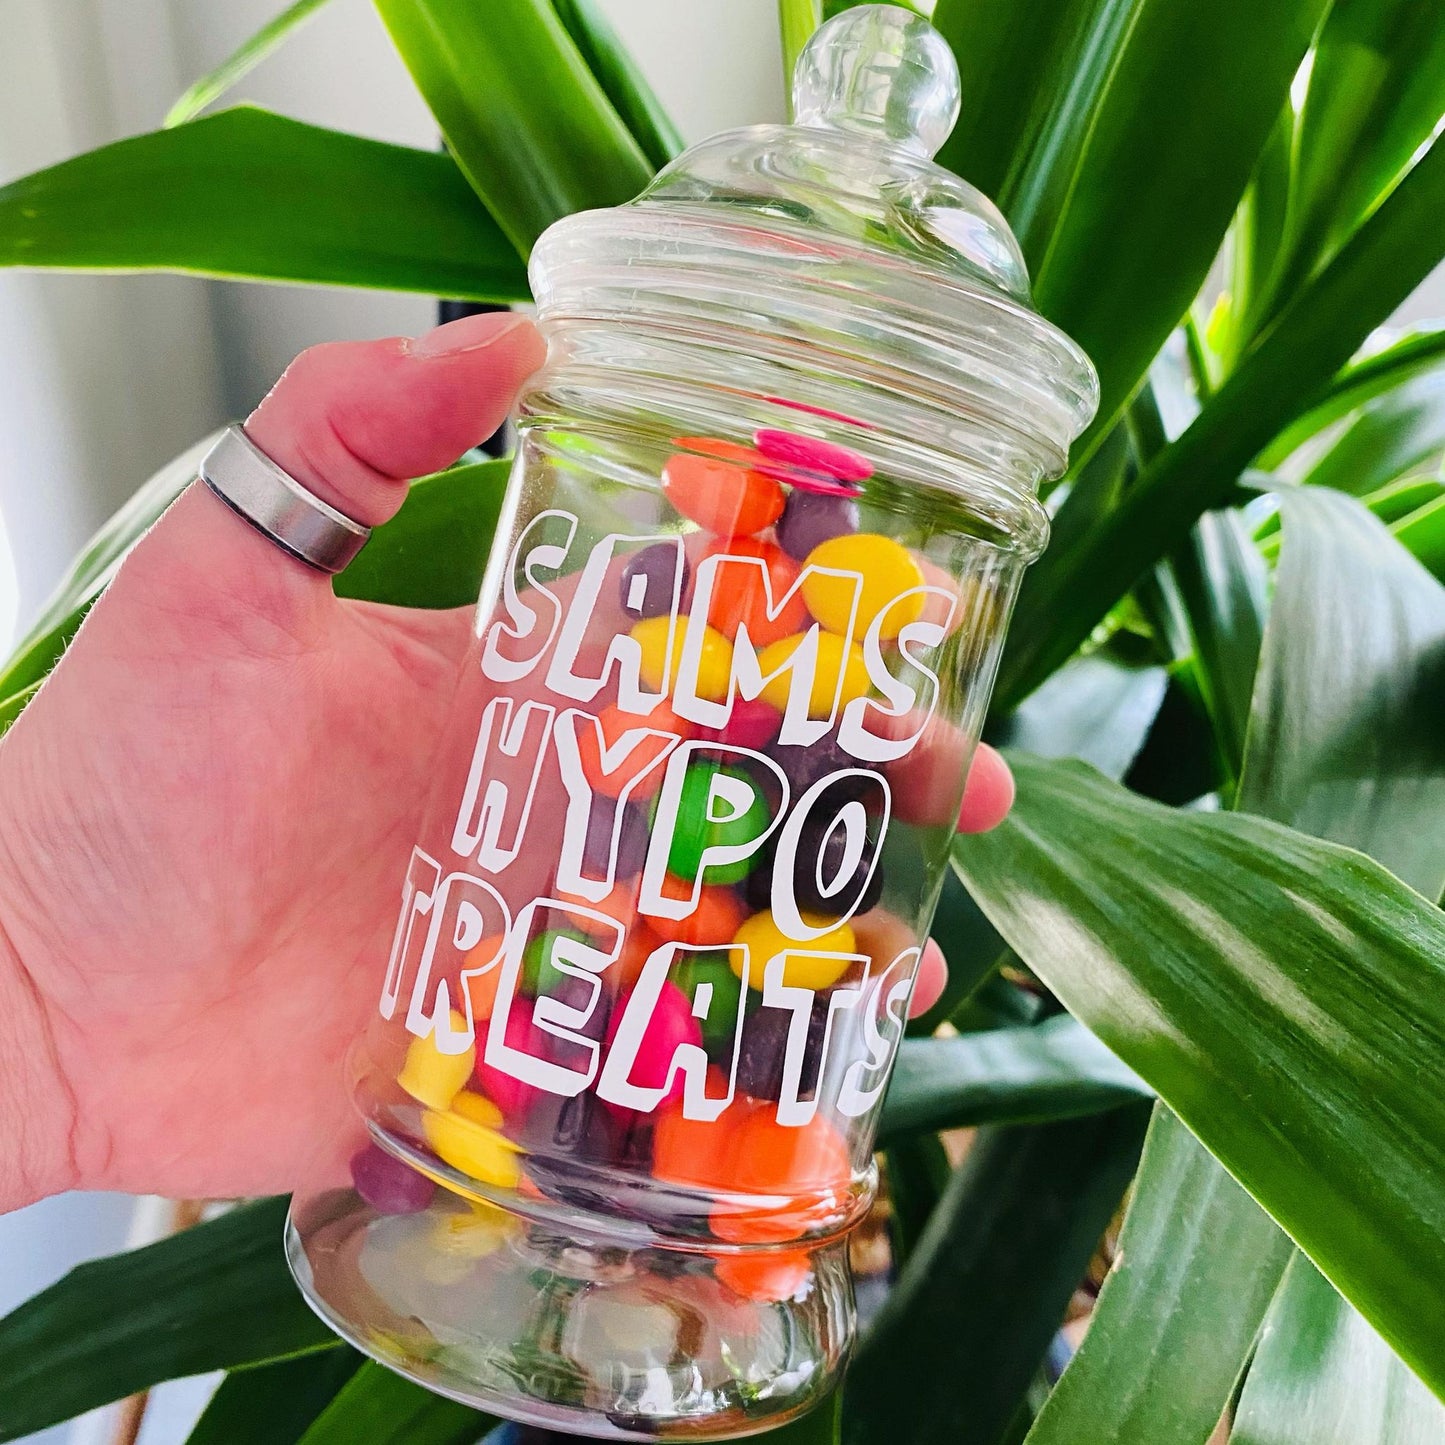 Hypo-Treat Sweet Jars - (Name) Hypo Treats